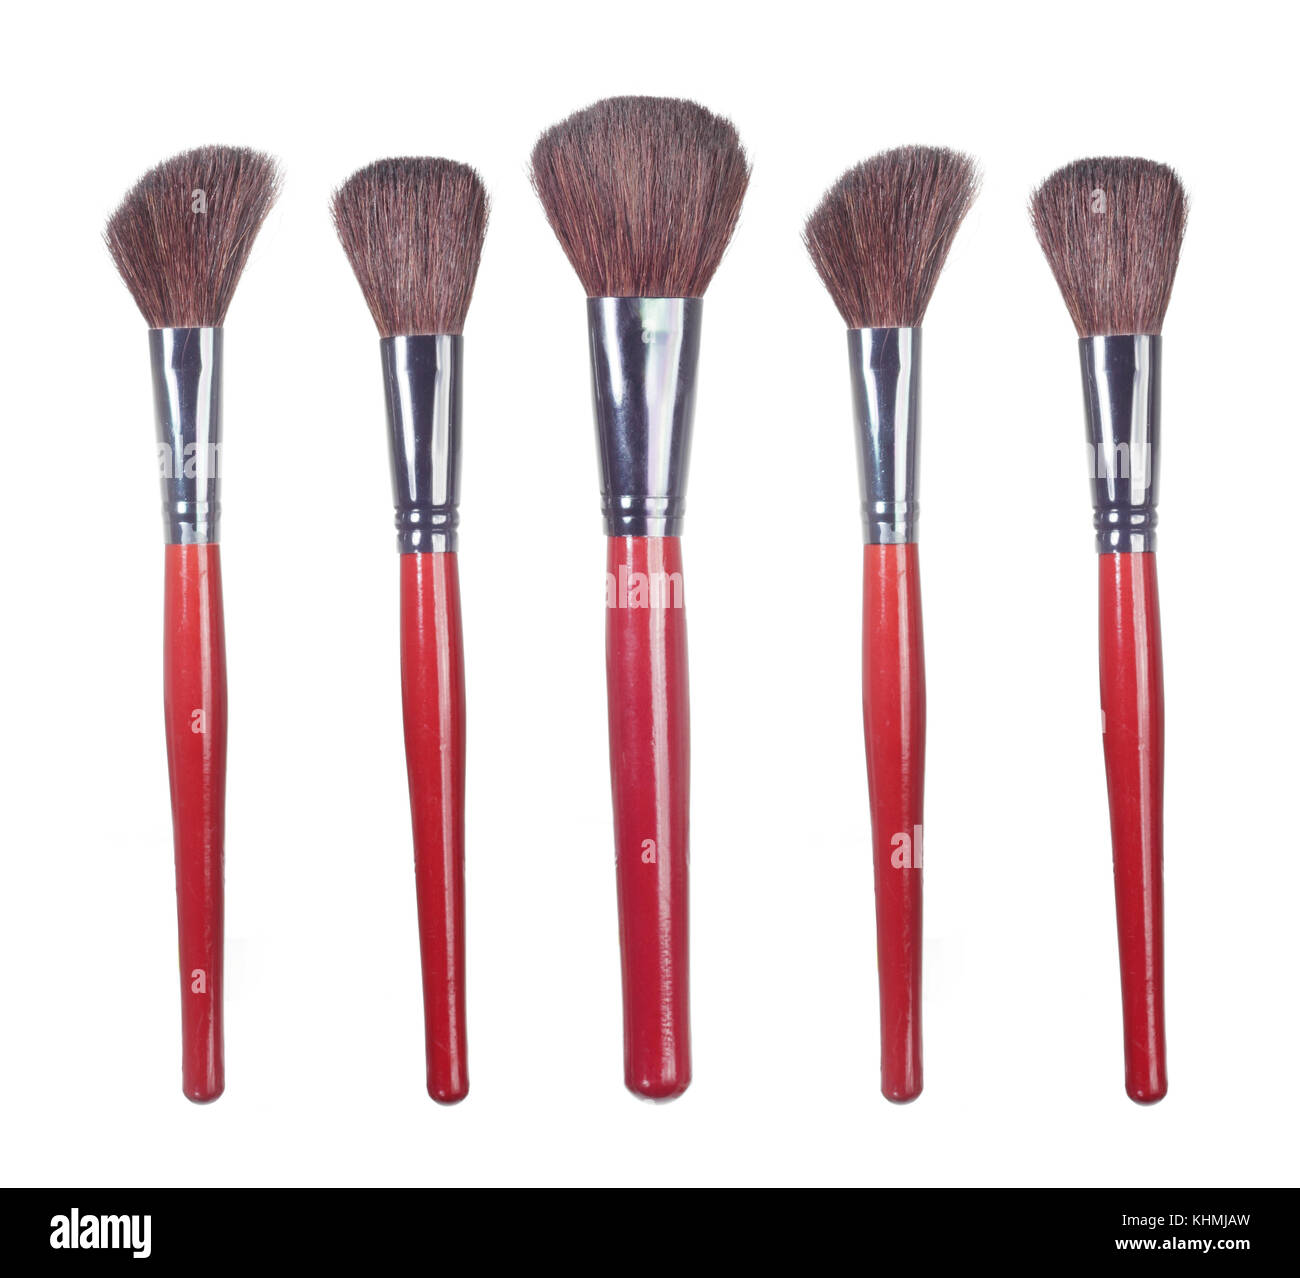 Make Up Brushes on White Background Stock Photo